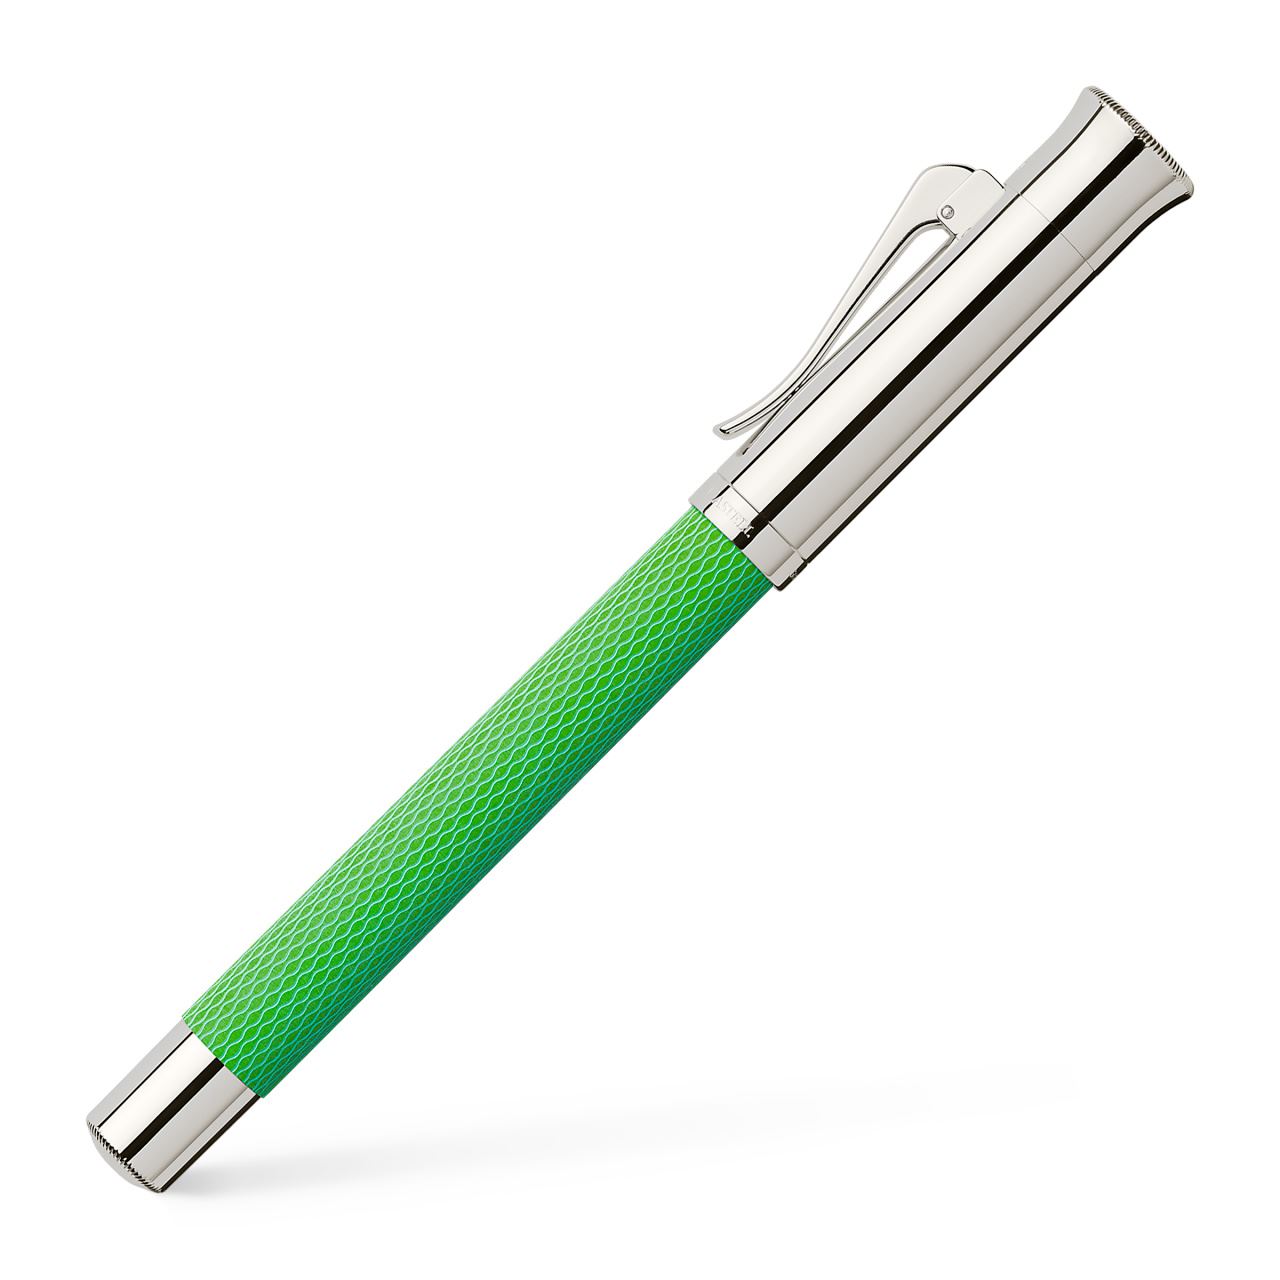 Graf-von-Faber-Castell - Fountain pen Guilloche Viper Green EF